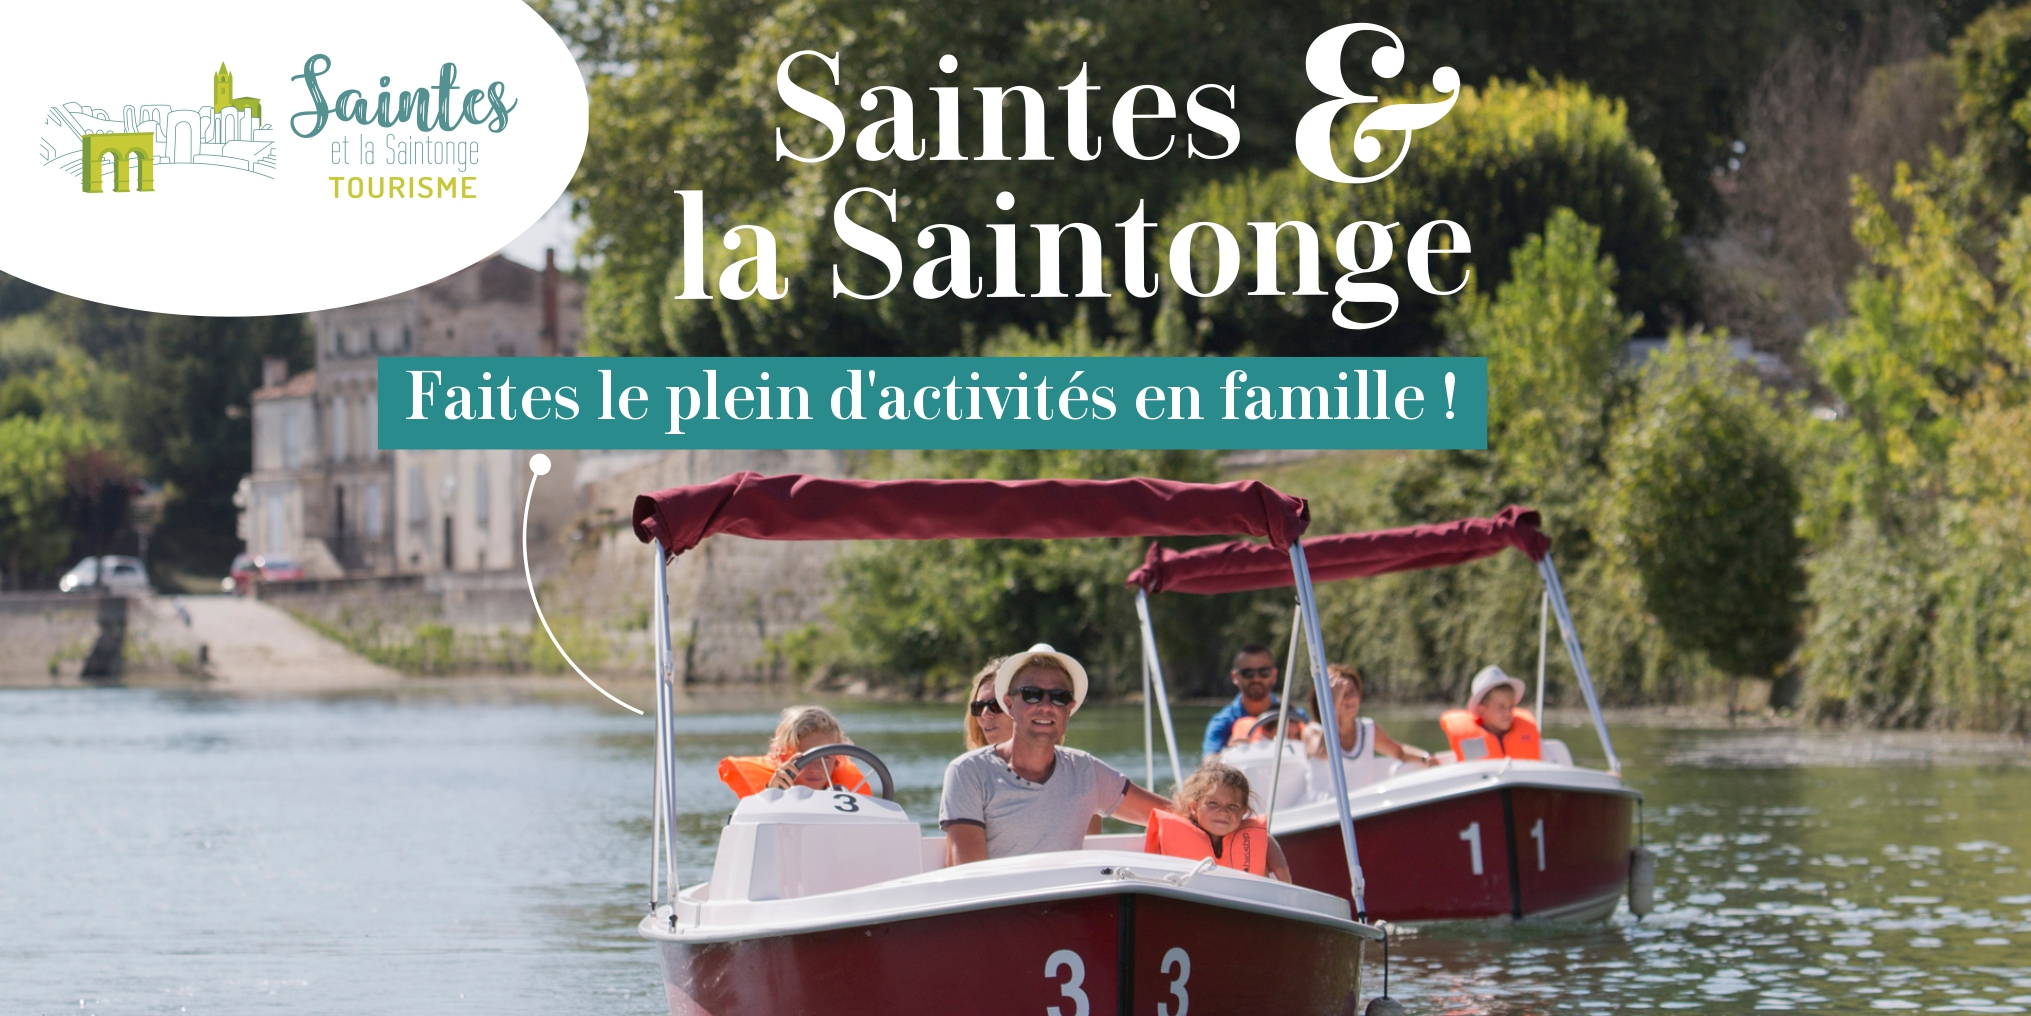 Saintes et la Saintonge : une vraie destination famille !